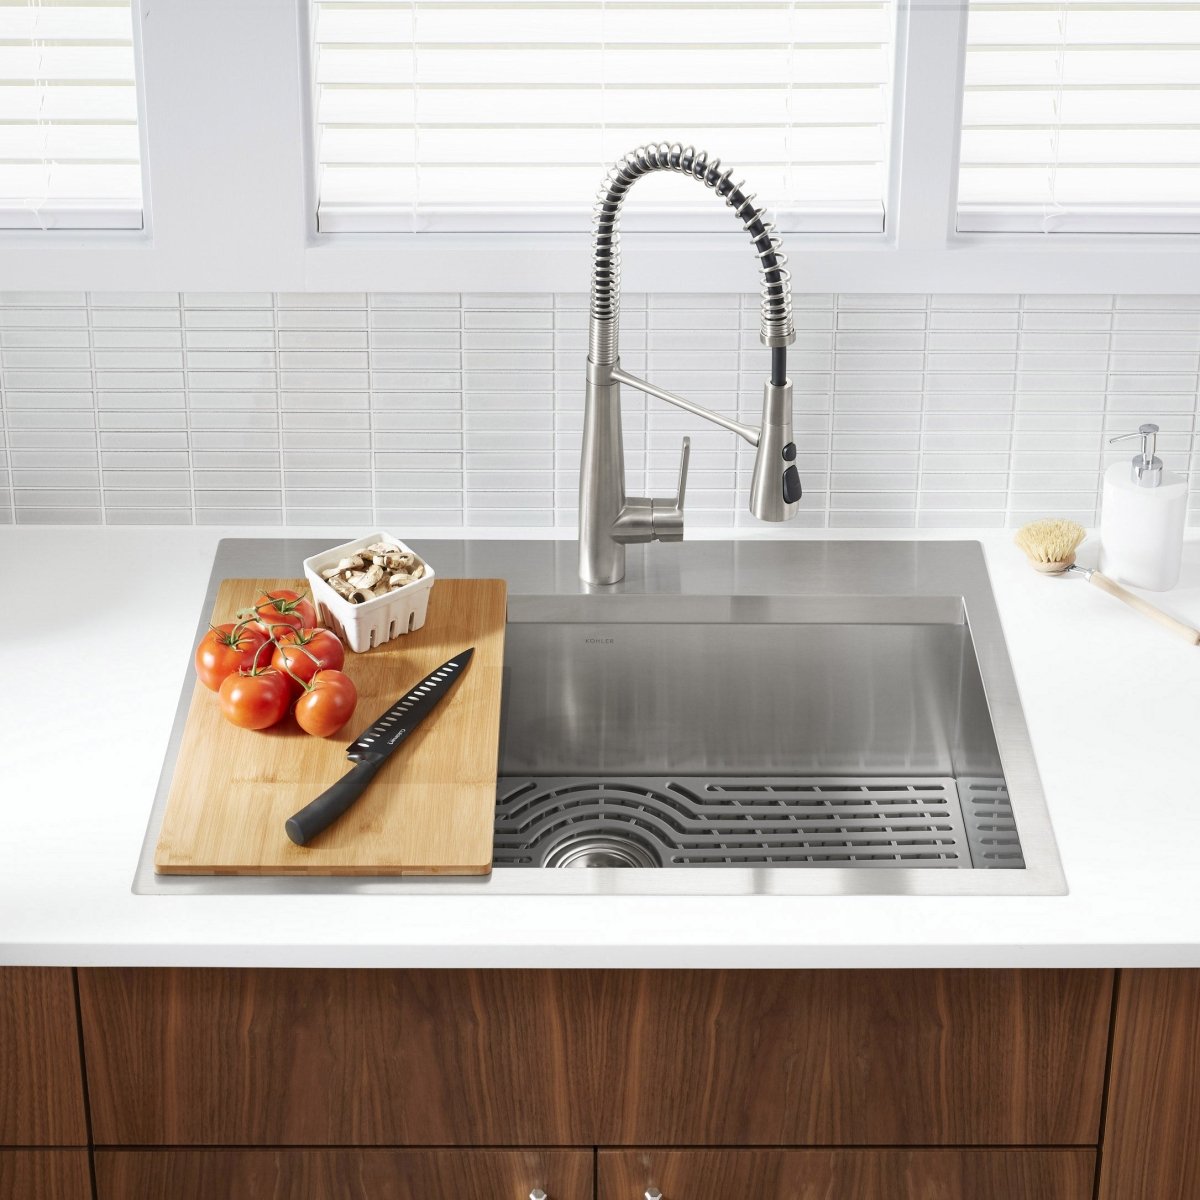 Kohler Pro-Inspired Kitchen Sink Kit - Alpine Outlets